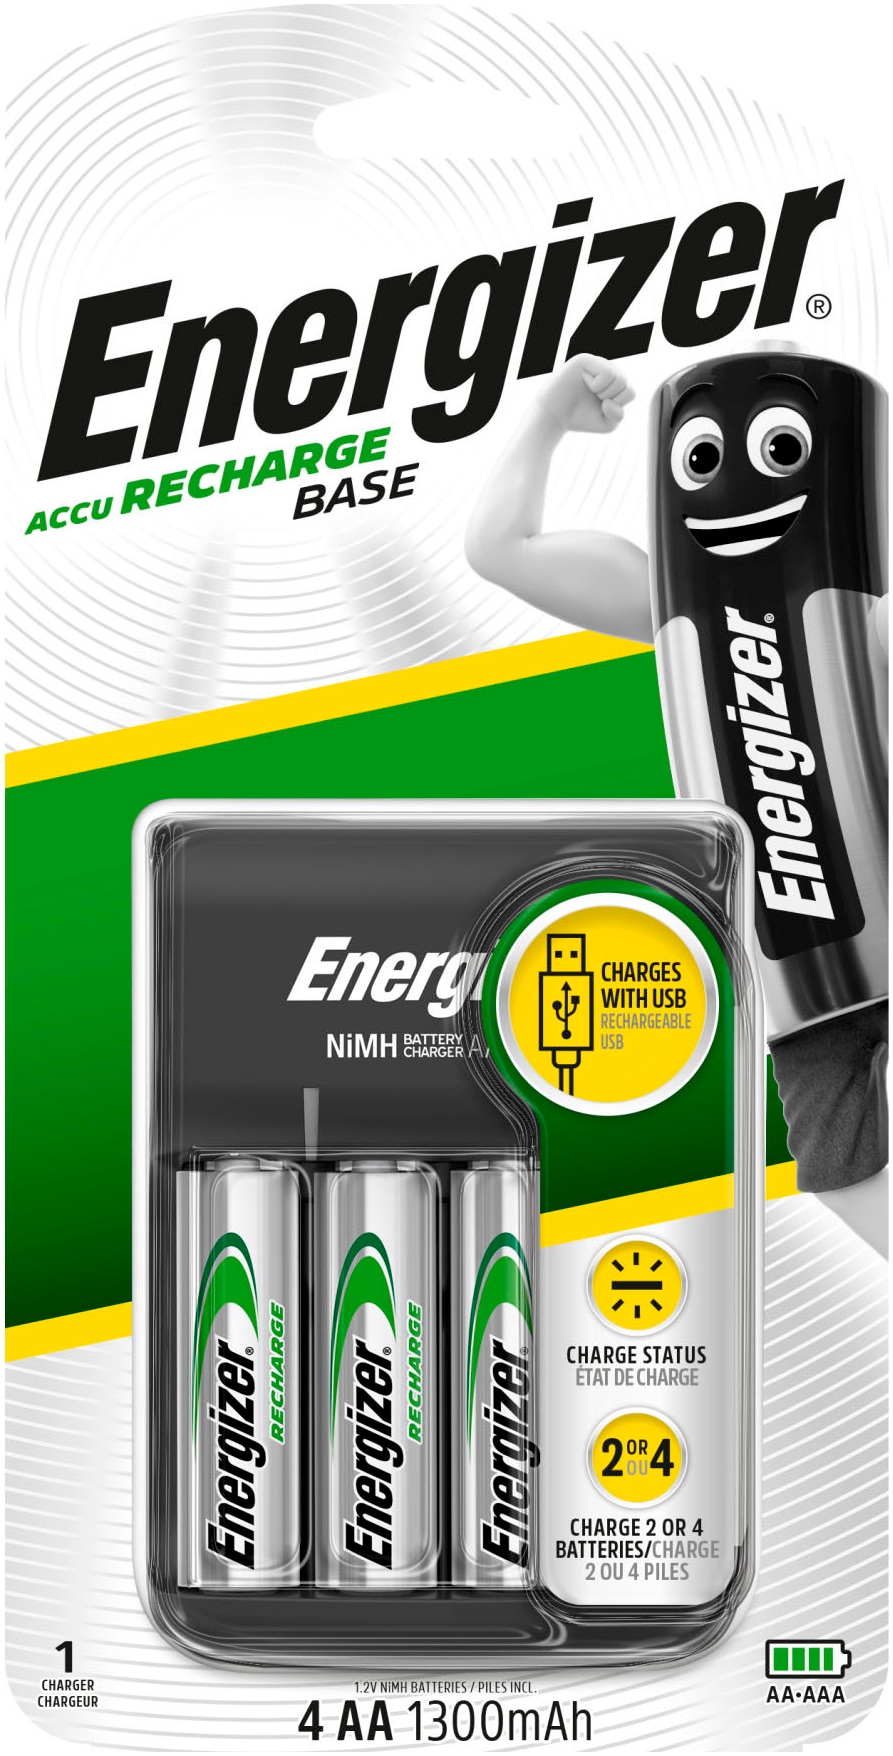 Batterie-Ladegerät »Base Charger + 4AA 1300 mAh«, 200 mA